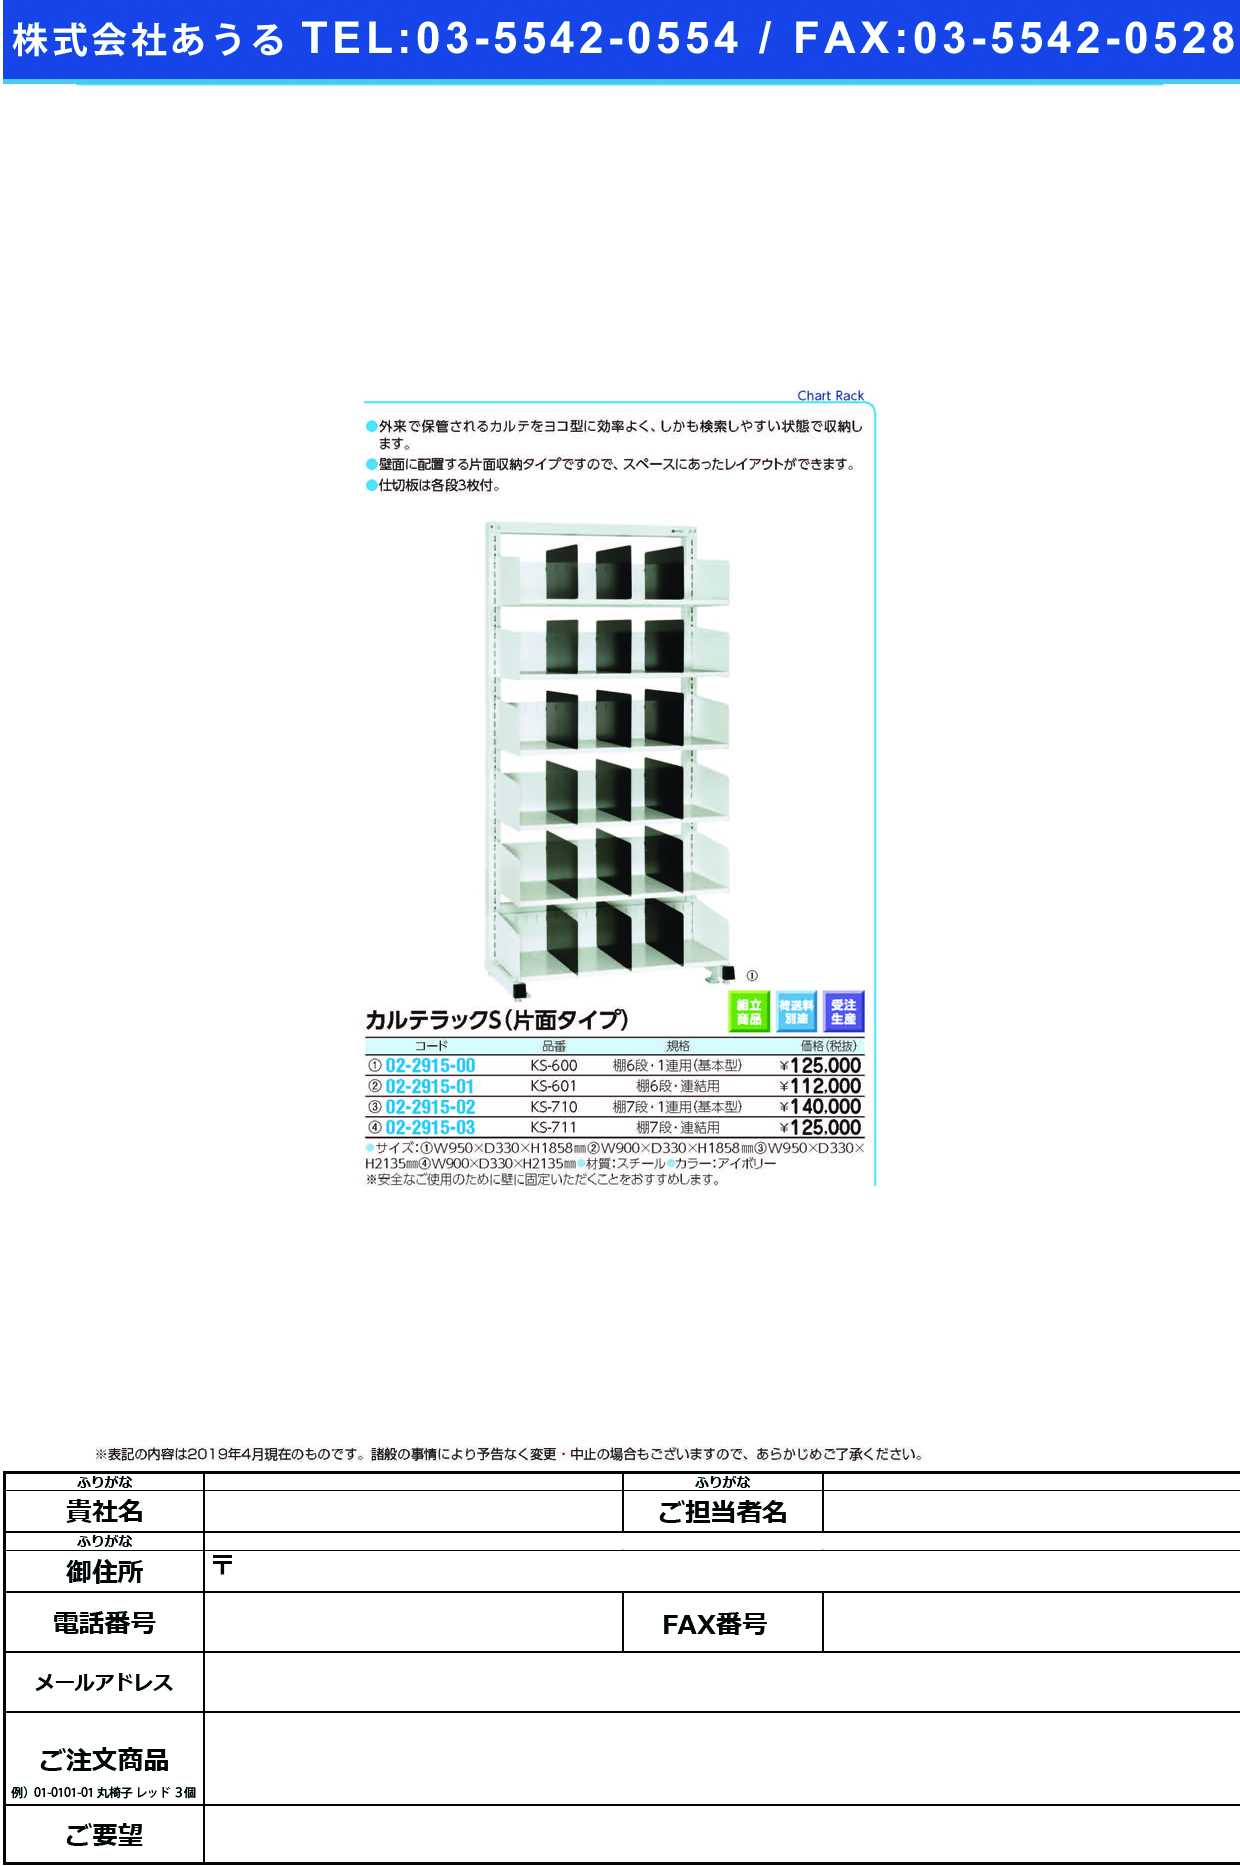 (02-2915-00)カルテラックＳ（片面型） KS-600(6ﾀﾞﾝ･1ﾚﾝﾖｳ) ｶﾙﾃﾗｯｸS(ｶﾀﾒﾝｶﾞﾀ)(ケルン)【1台単位】【2019年カタログ商品】